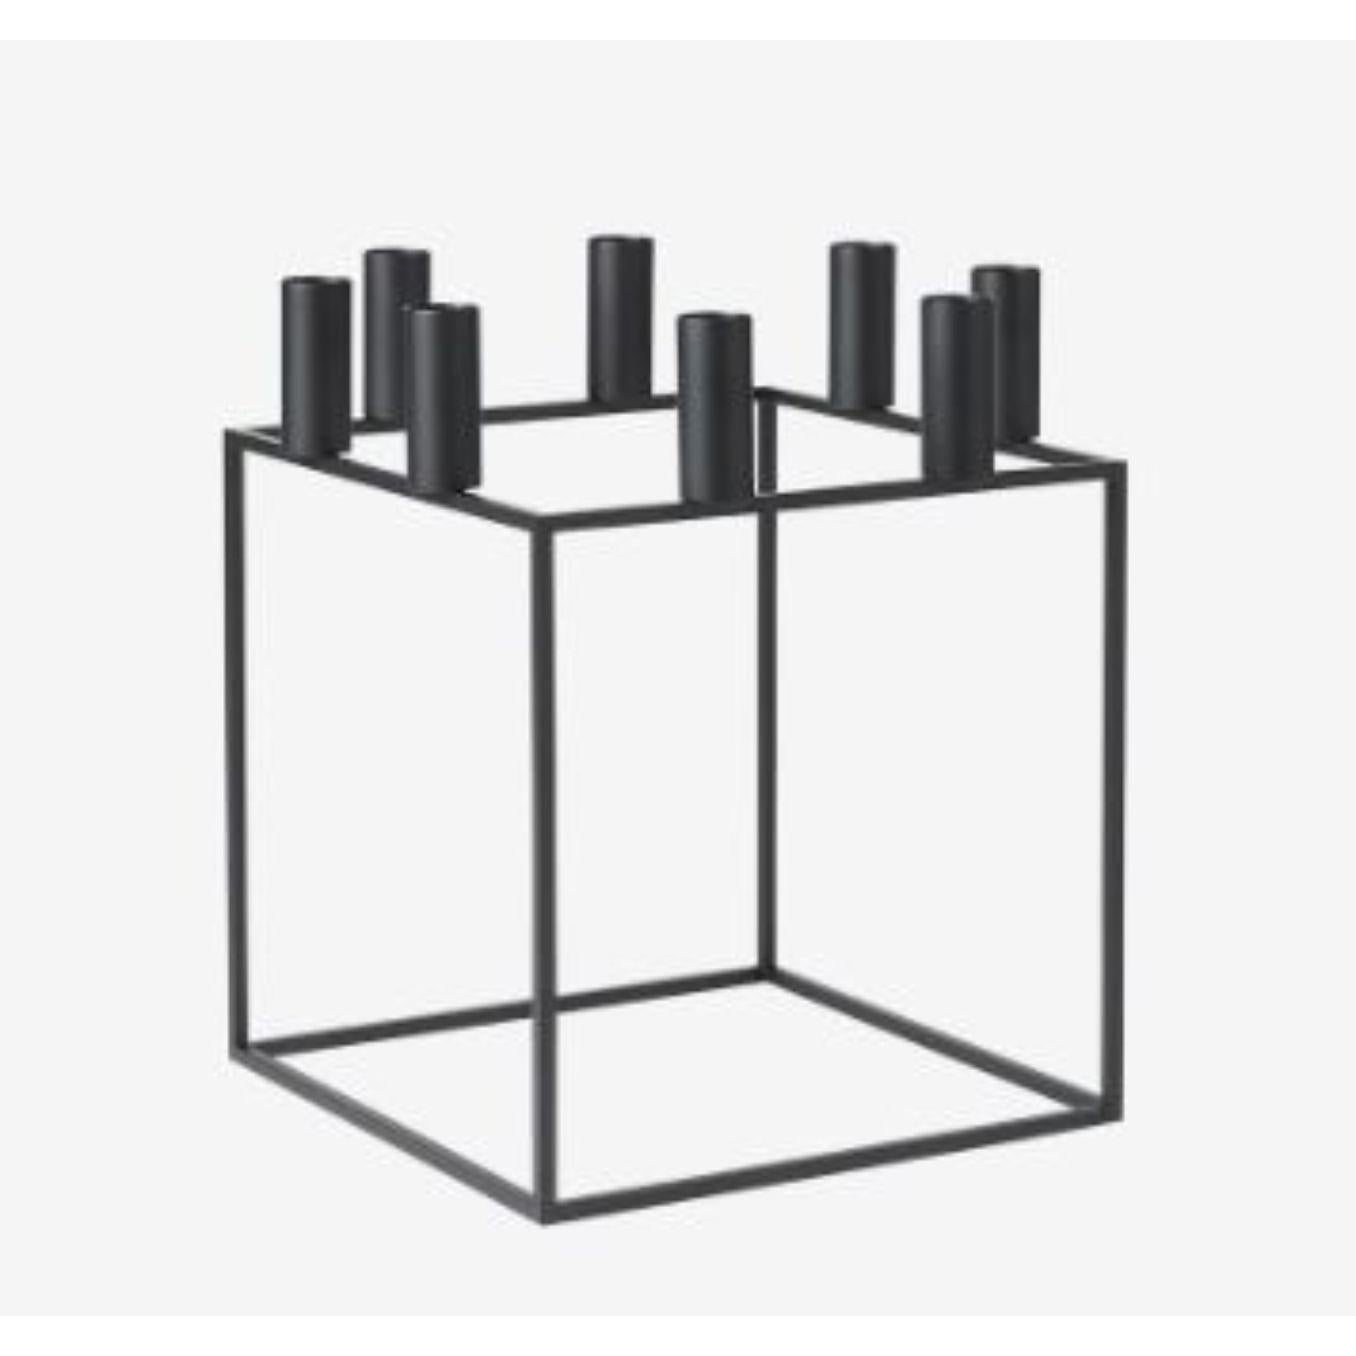 Porte-bougies Kubus 8 noir de Lassen
Dimensions : D 23 x L 23 x H 29 cm 
Matériaux : Métal 
Disponible également en différentes dimensions. 
Poids : 1.50 kg

Avec un sens aigu du style fonctionnaliste contemporain, Mogens Lassen a conçu en